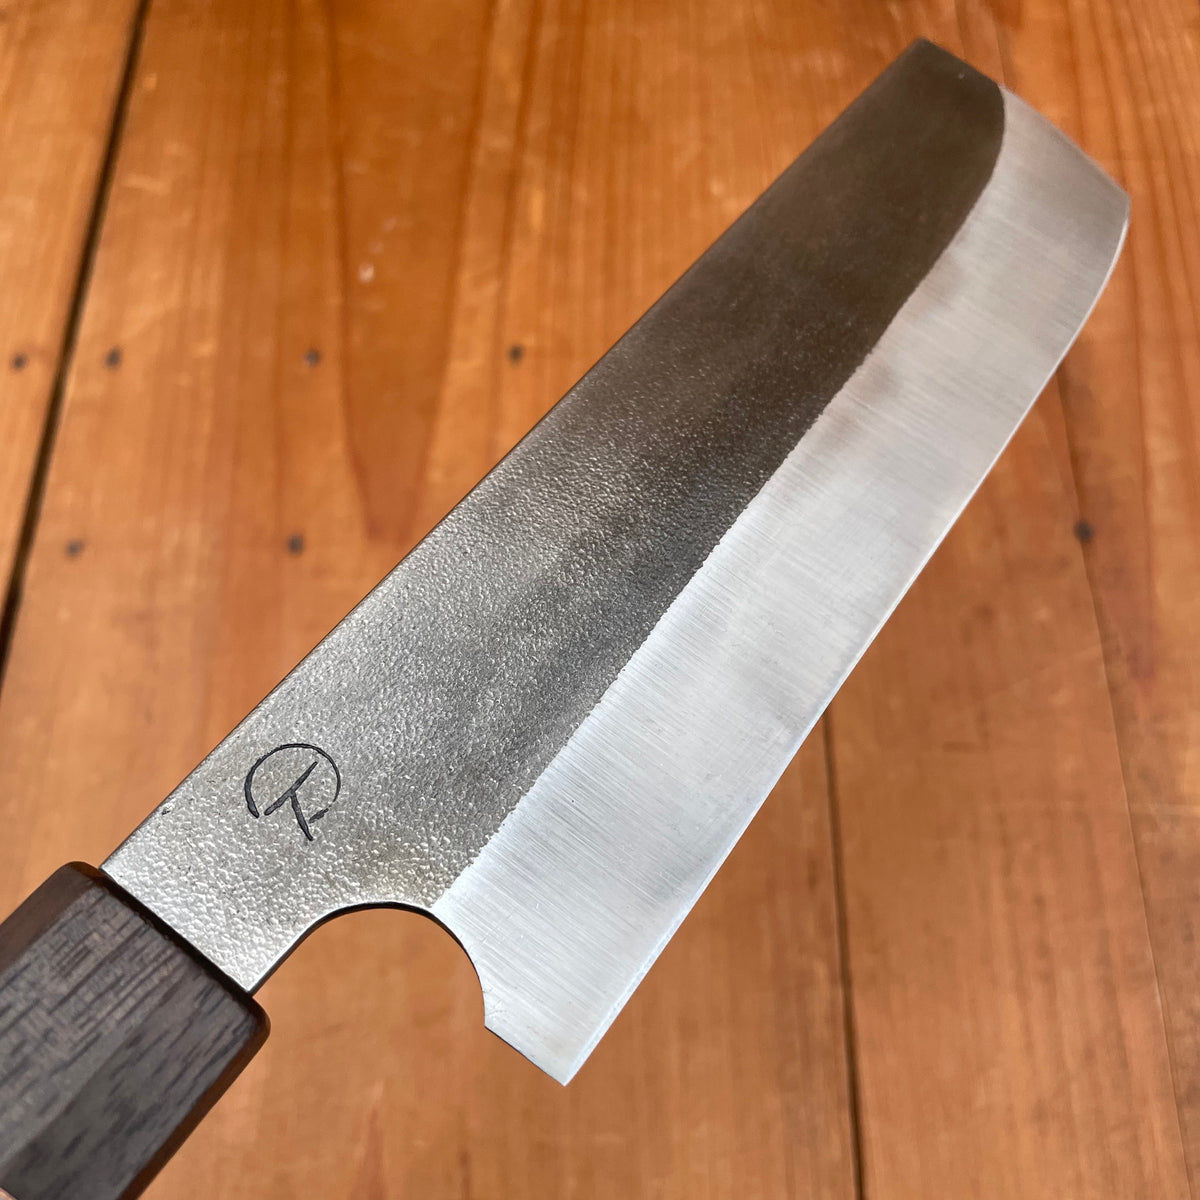 Alma Knife Co. Nakiri 52100 Nashiji - Wenge African Blackwood